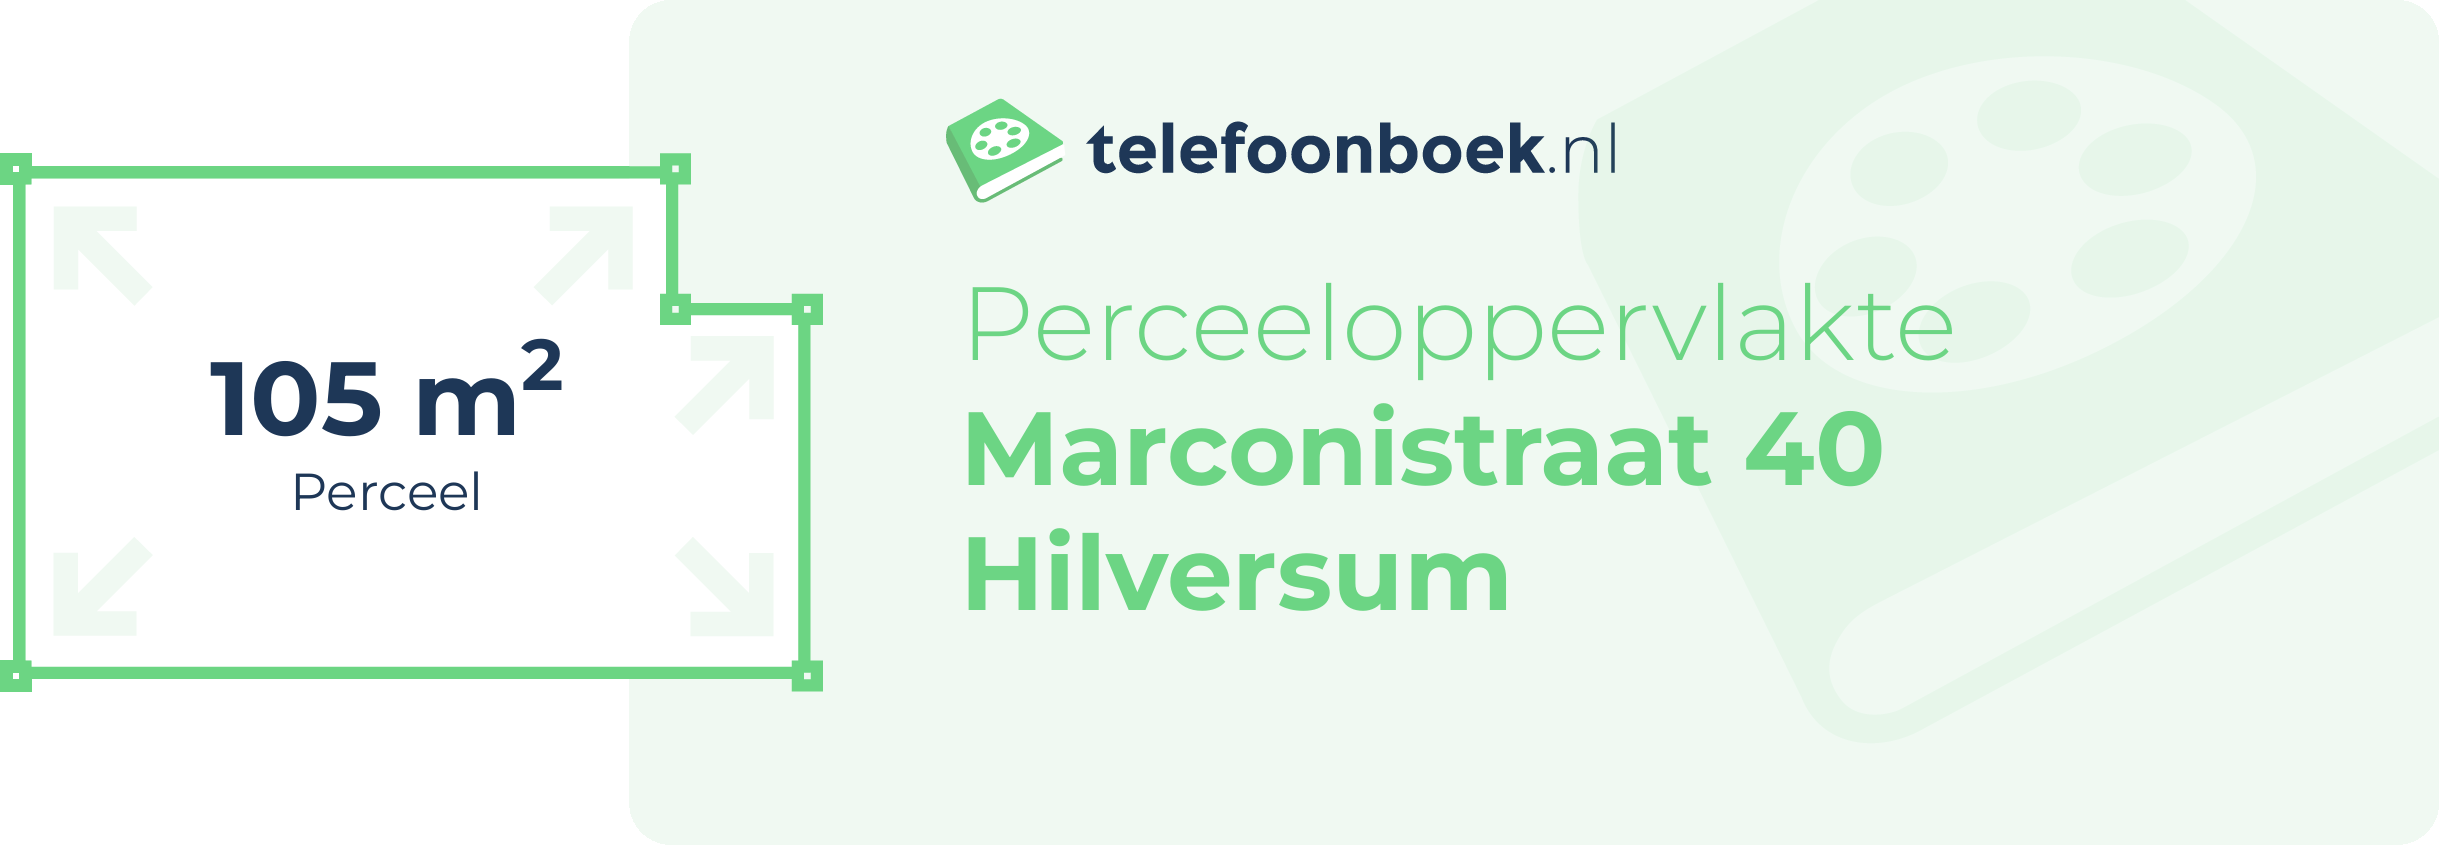 Perceeloppervlakte Marconistraat 40 Hilversum